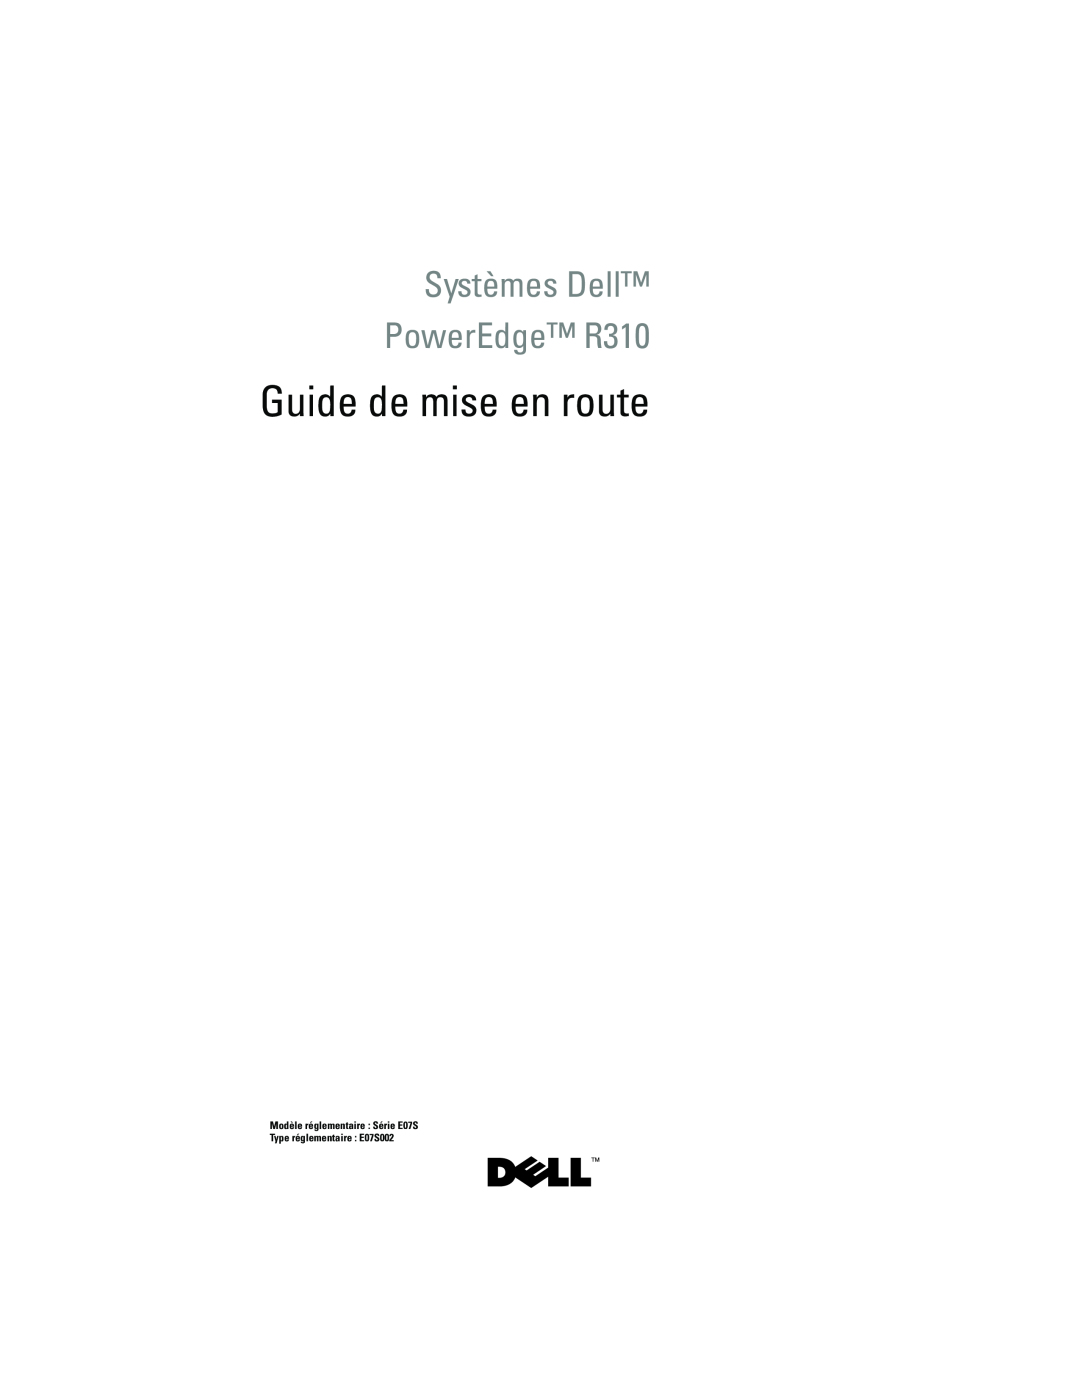 Dell Systèmes Dell PowerEdge R310, Guide de mise en route, Modèle réglementaire Série E07S Type réglementaire E07S002 